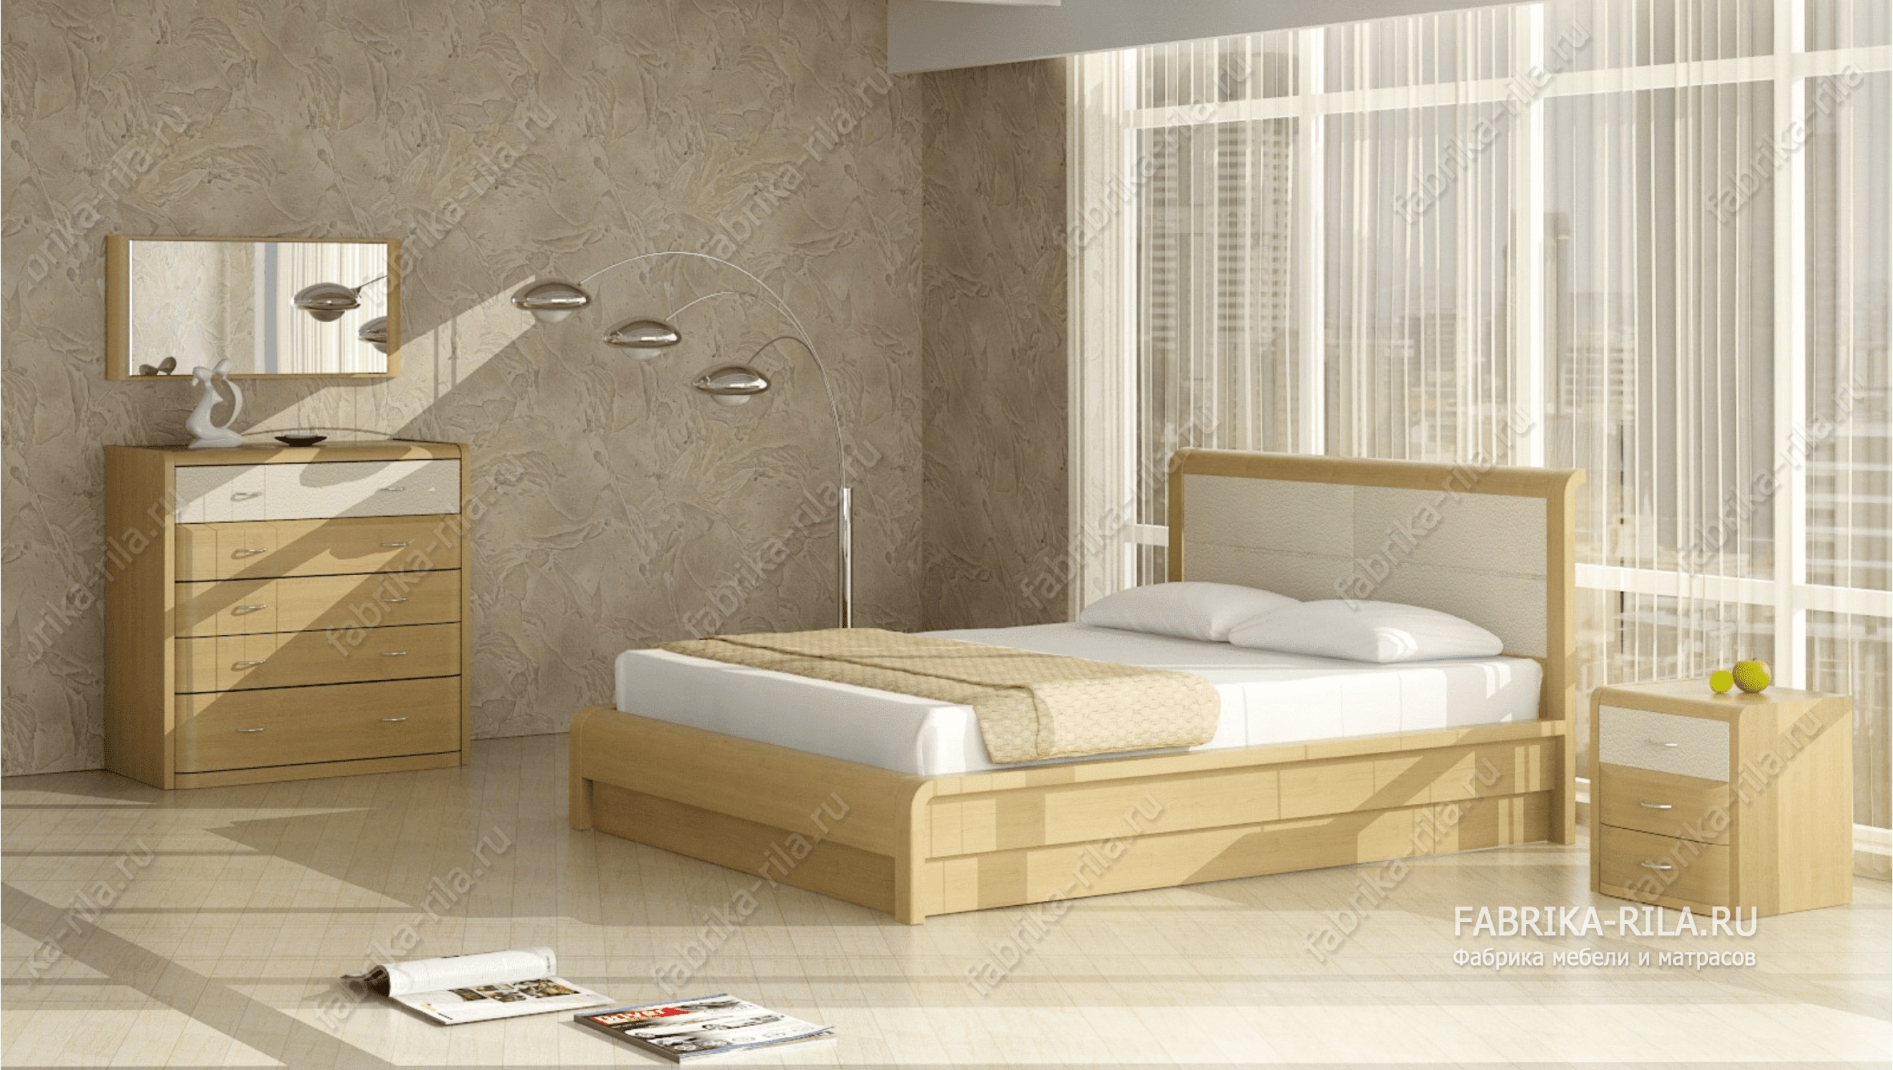 Кровать Arikama 1 — 90x200 см. из сосны